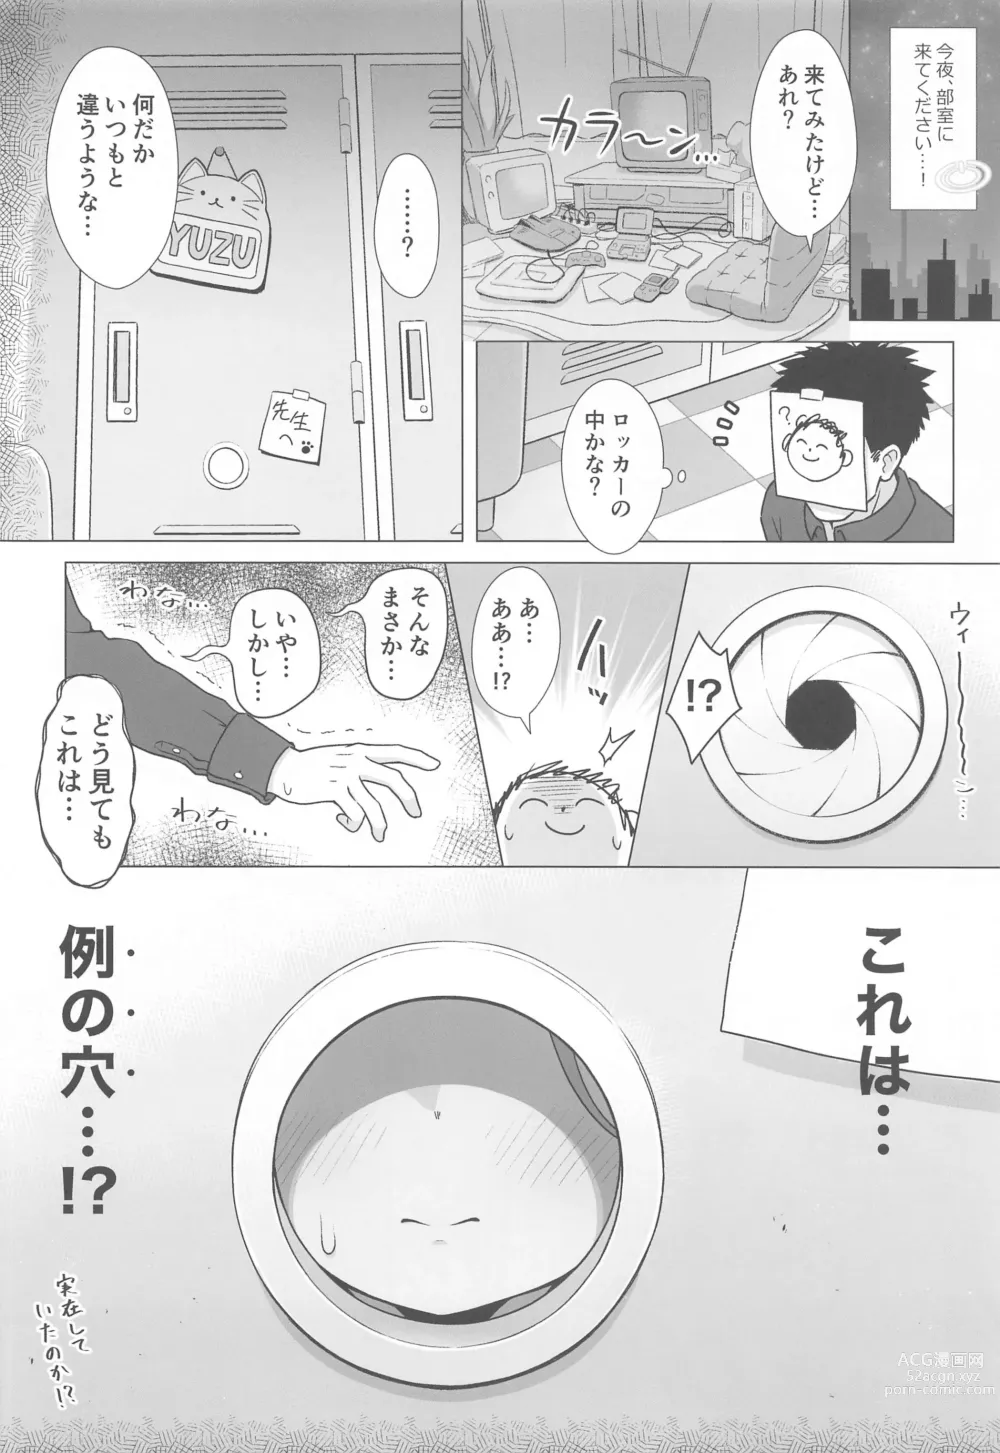 Page 5 of doujinshi Yuzu Ana